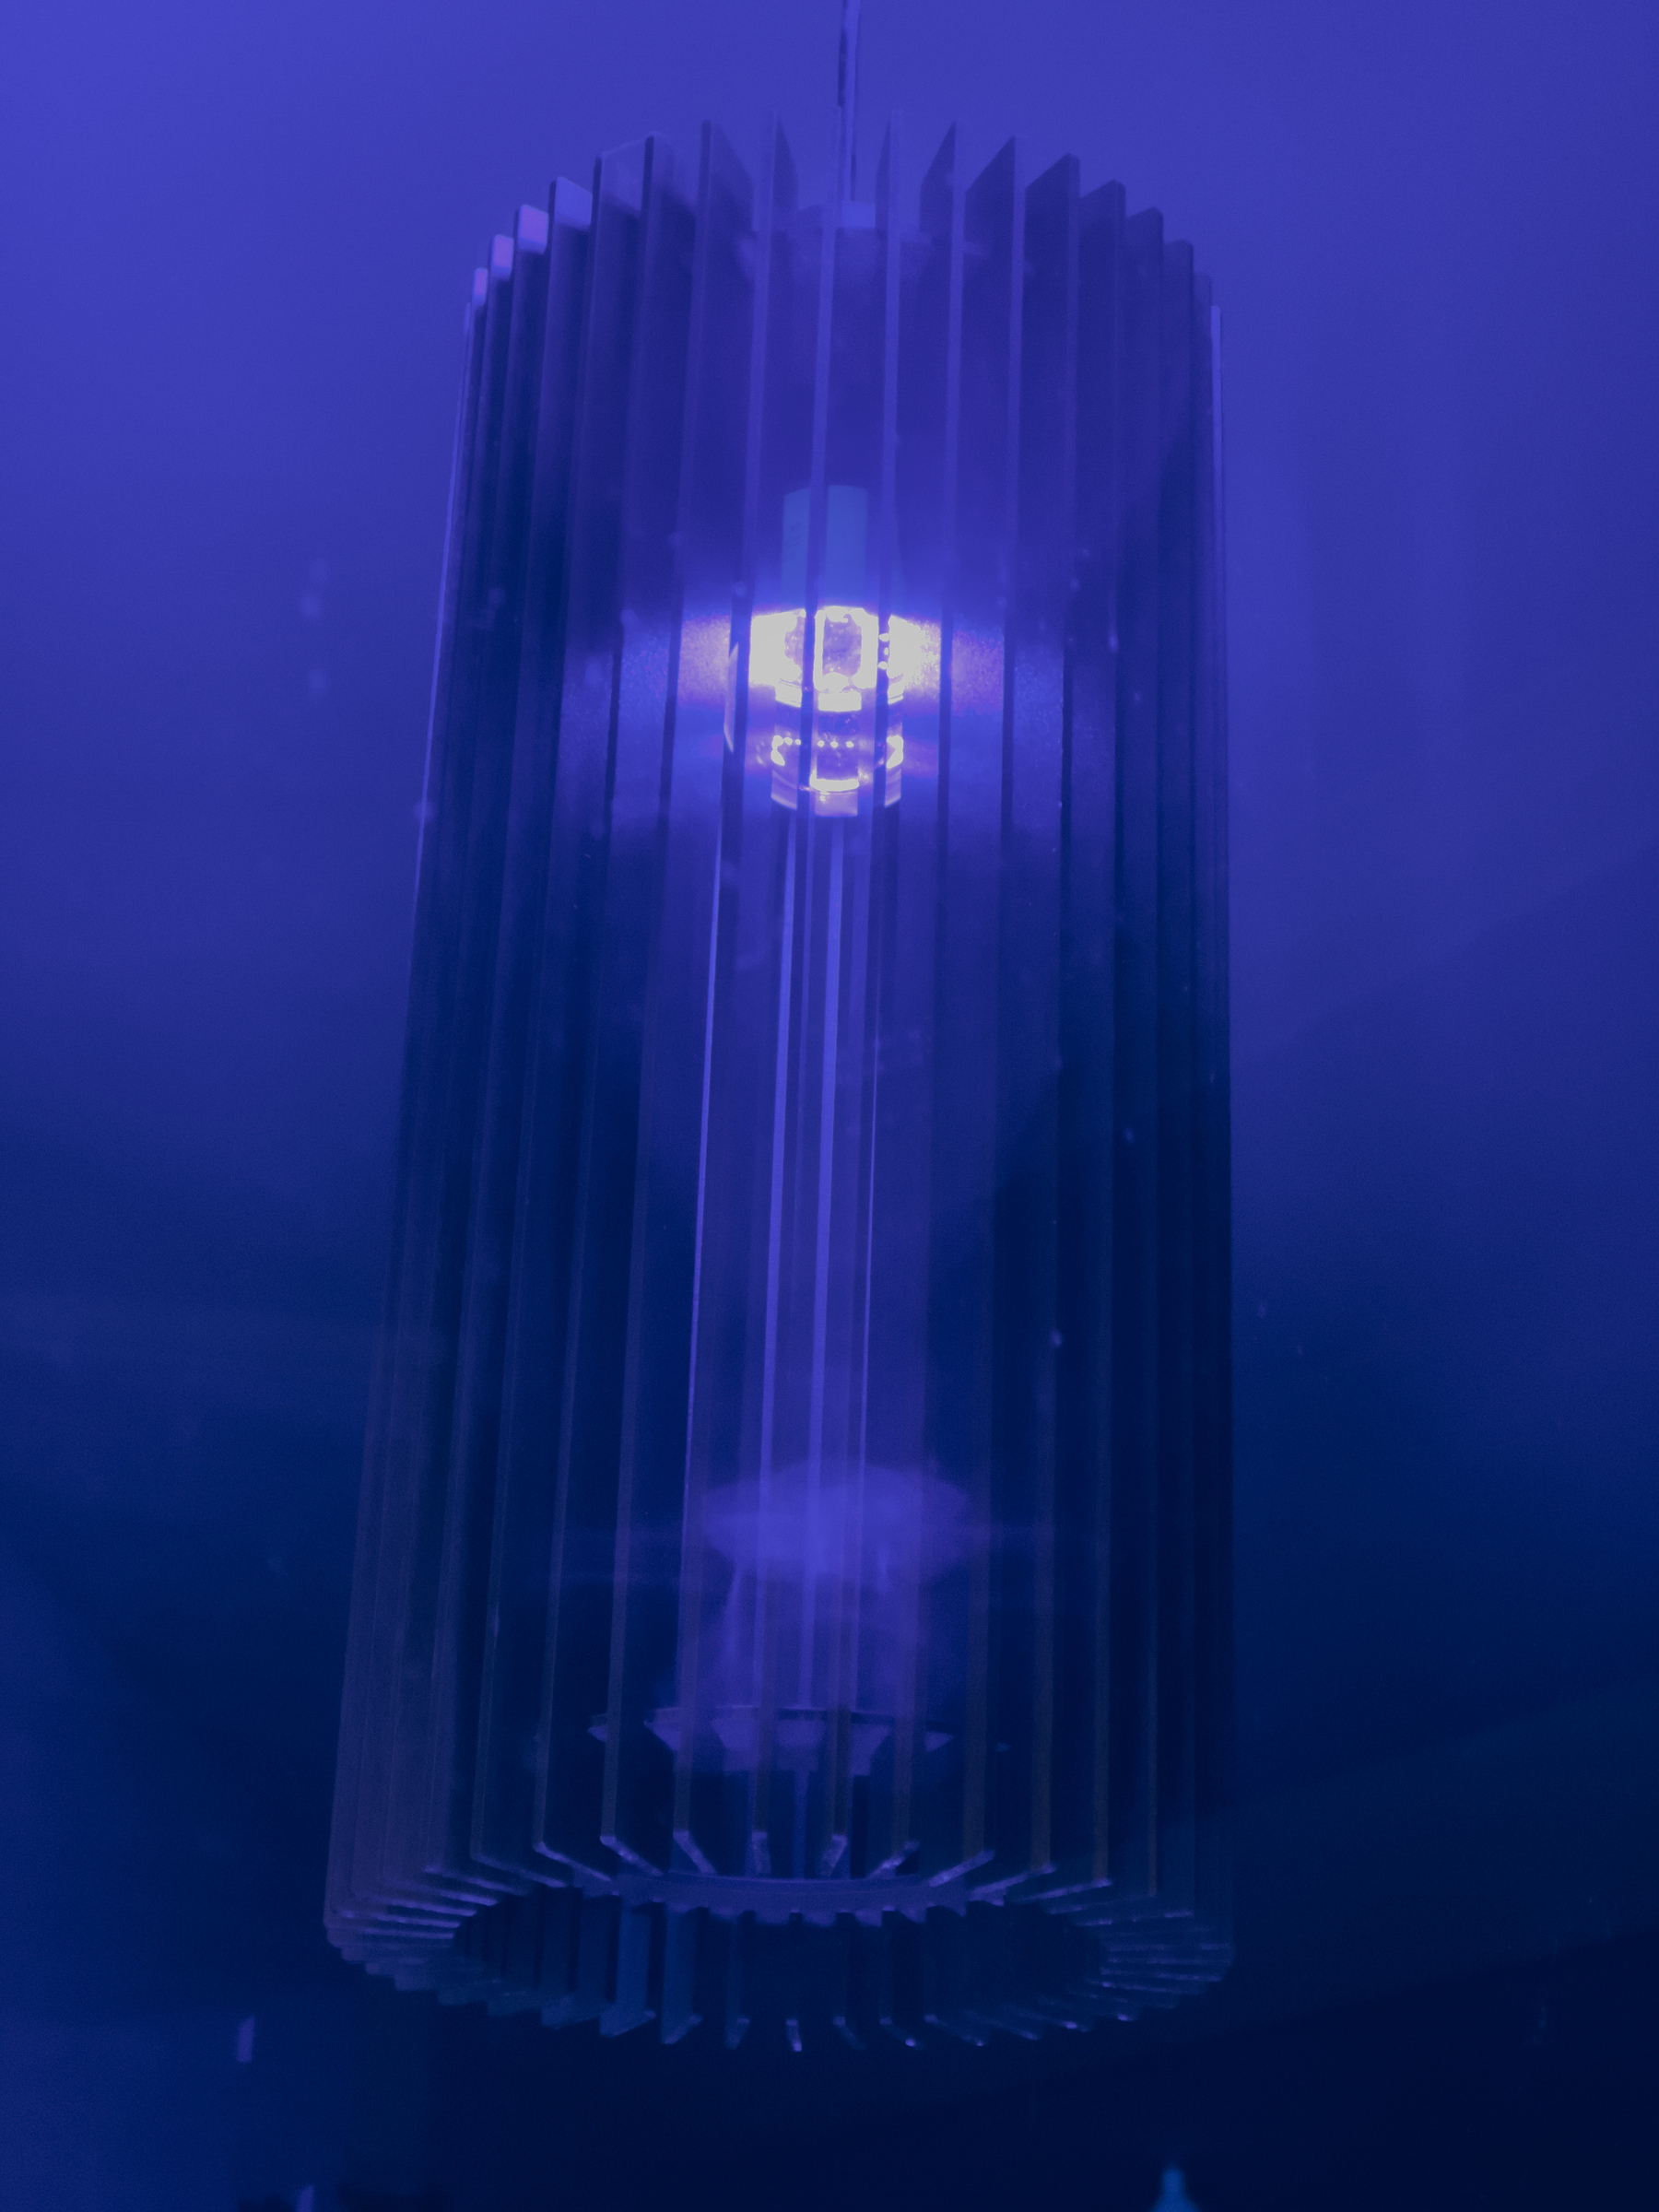 Cylindrical finned light fixture in shop widow, scene bathed in purple glow.